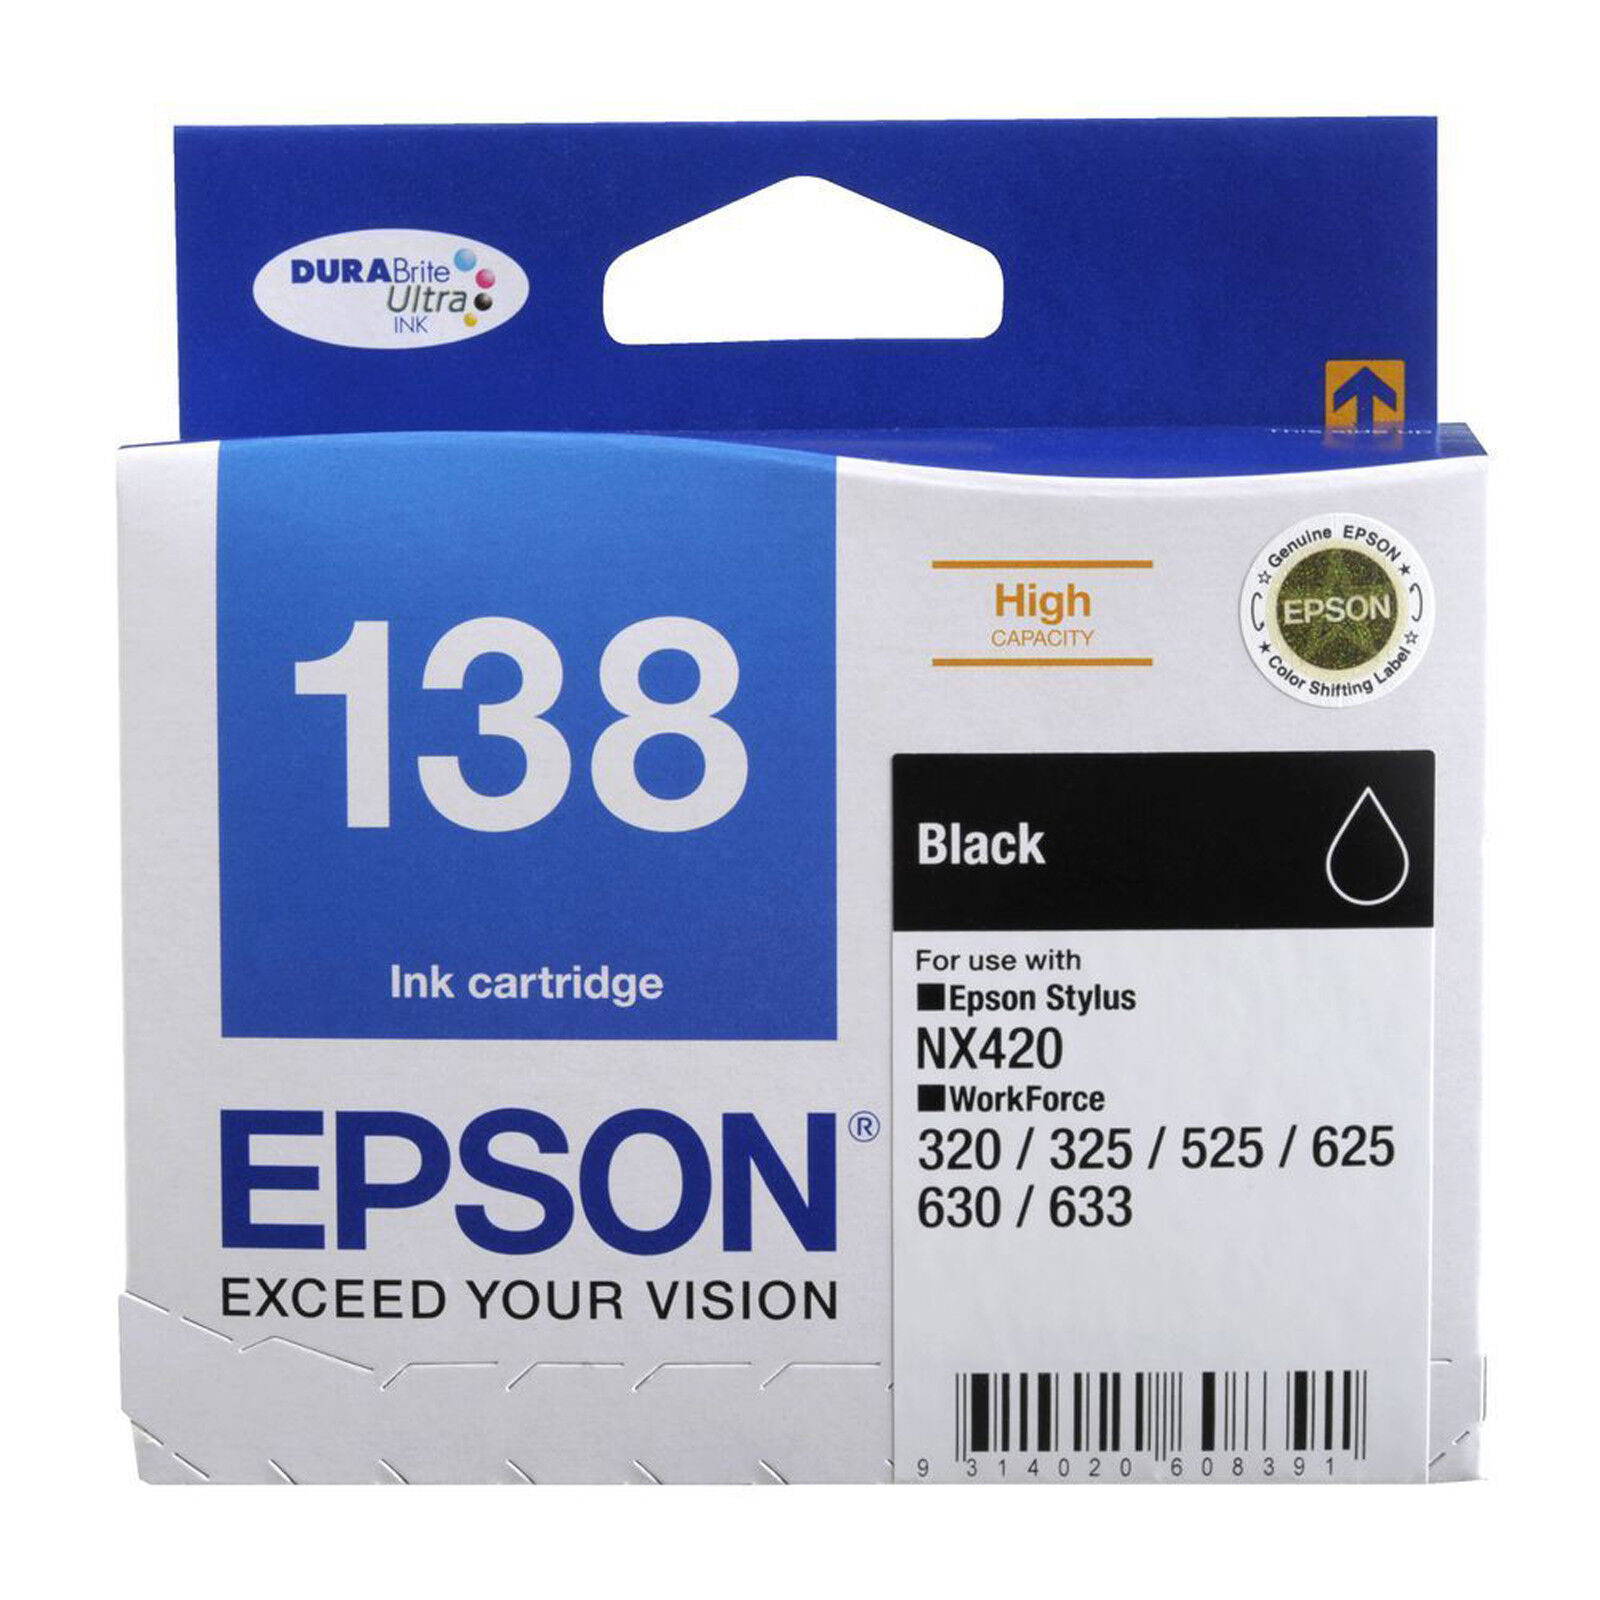 GENUINE Original Epson 138 Ink Cartridge Value Pack Toner Stylus WorkForce